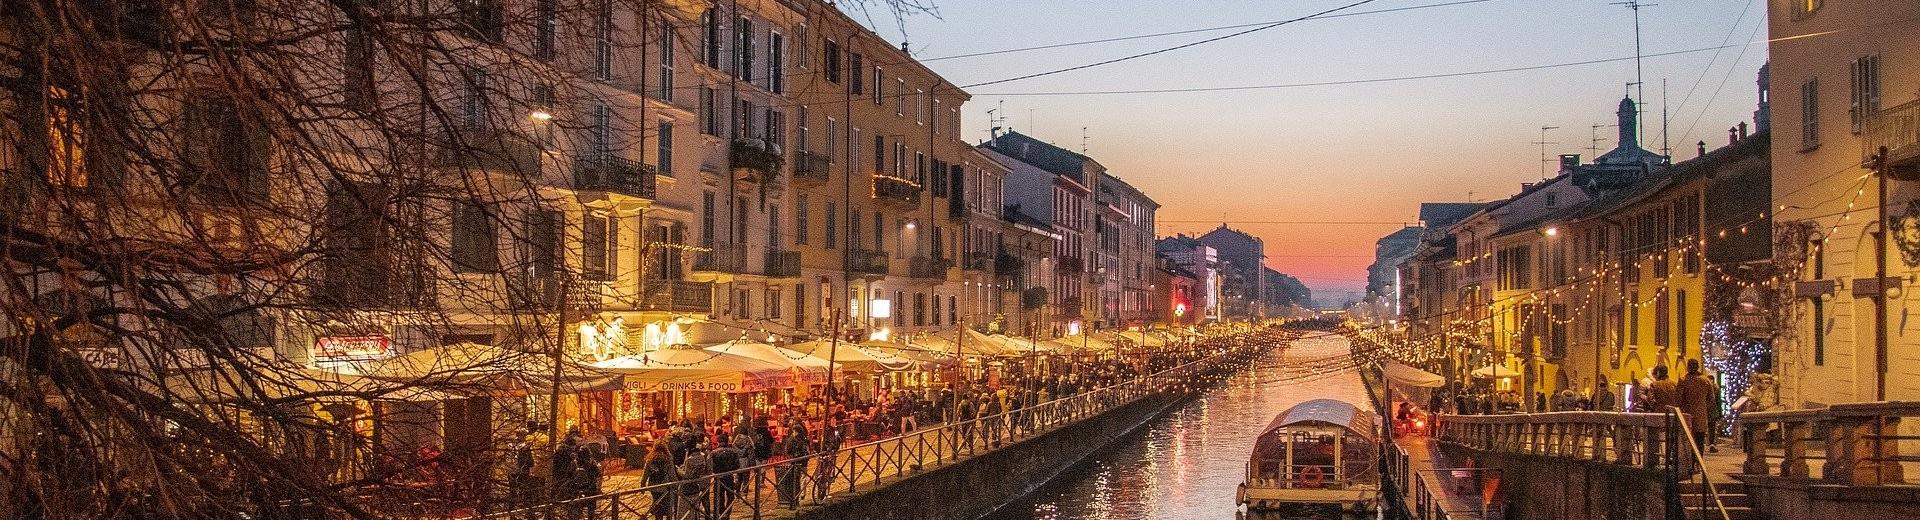 Soggiorna all''Hotel City e scopri la zona dei Navigli di Milano con i suoi canali navigabili, bar, locali e botteghe.